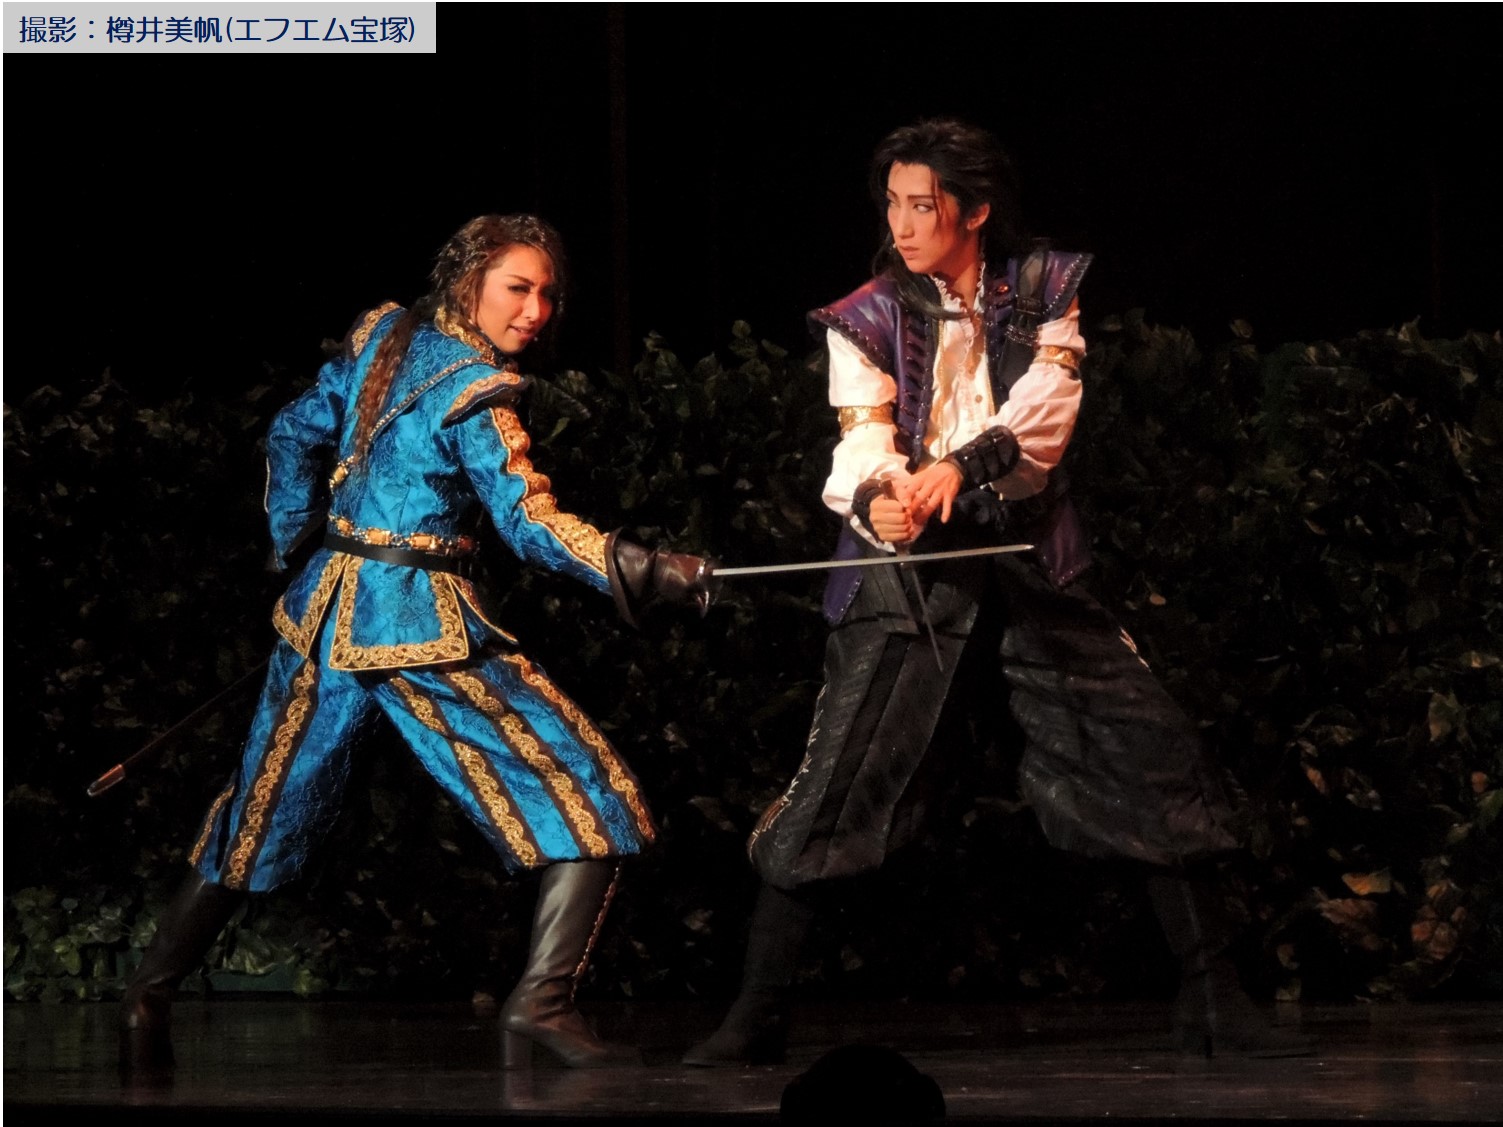 宝塚大劇場宙組公演『El Japón（エル ハポン）－イスパニアのサムライ